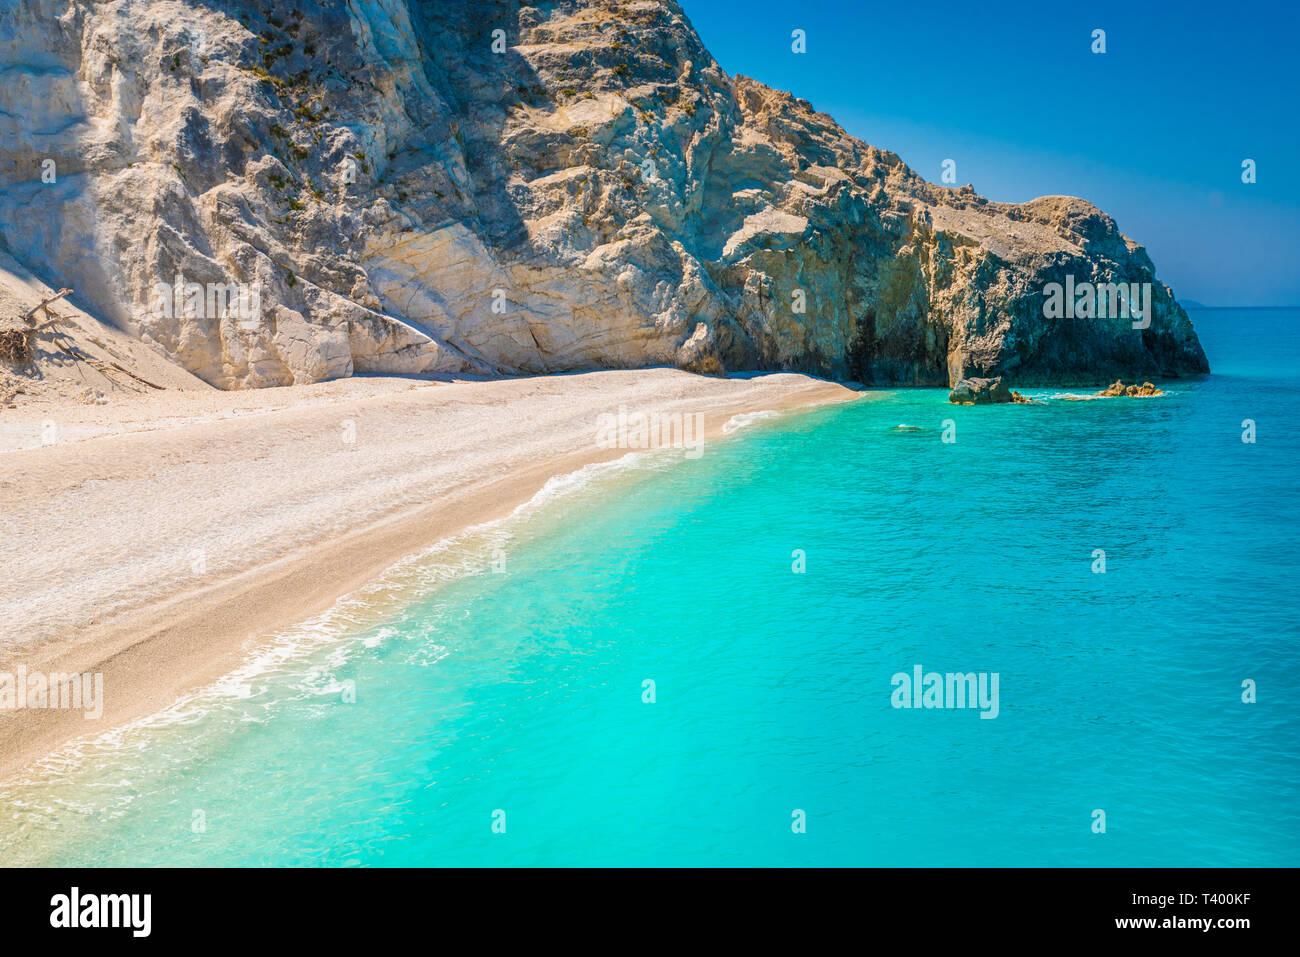 Egremni beach on the Ionian sea, Lefkada island, Greece. Stock Photo